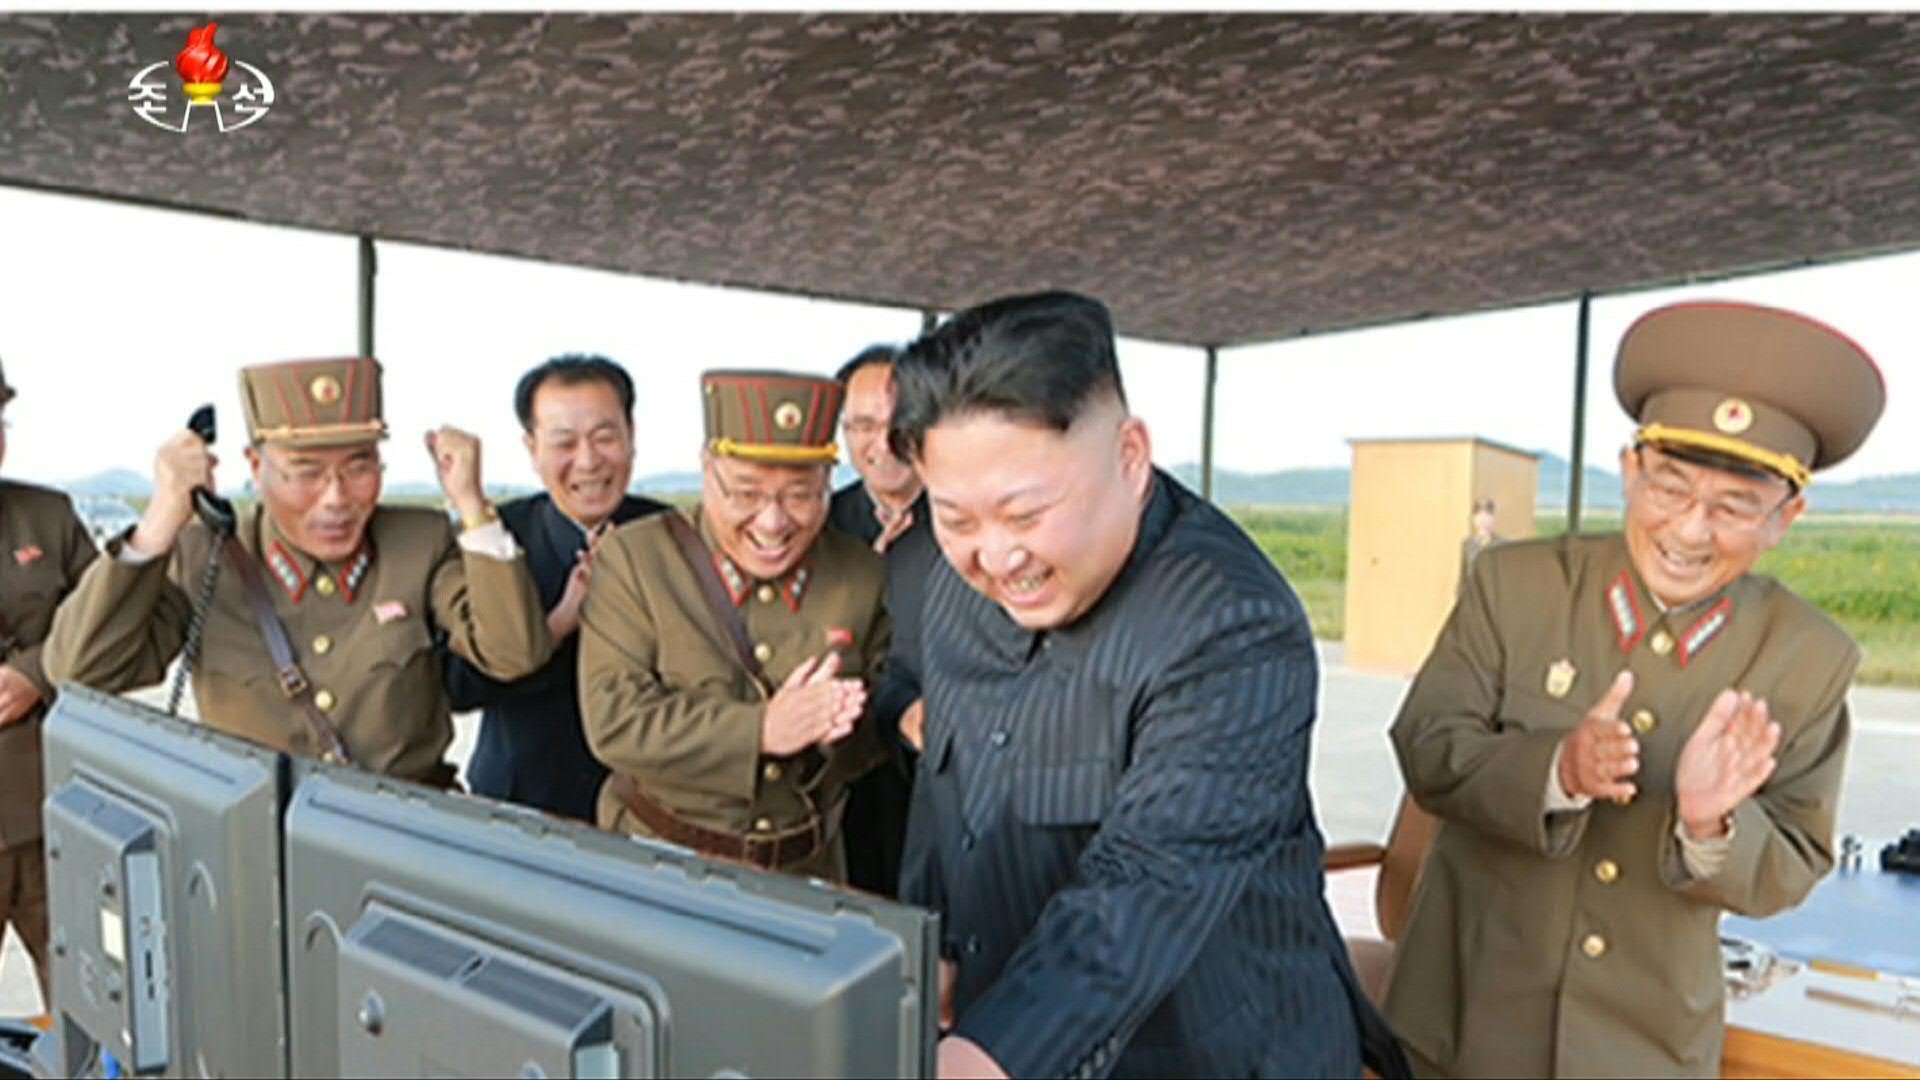 Corea del Norte probó dos misiles crucero estratégicos de largo alcance, que el líder Kim Jong Un exaltó como un exitoso despliegue de su capacidad de ataque nuclear táctico, informó el jueves la prensa estatal.